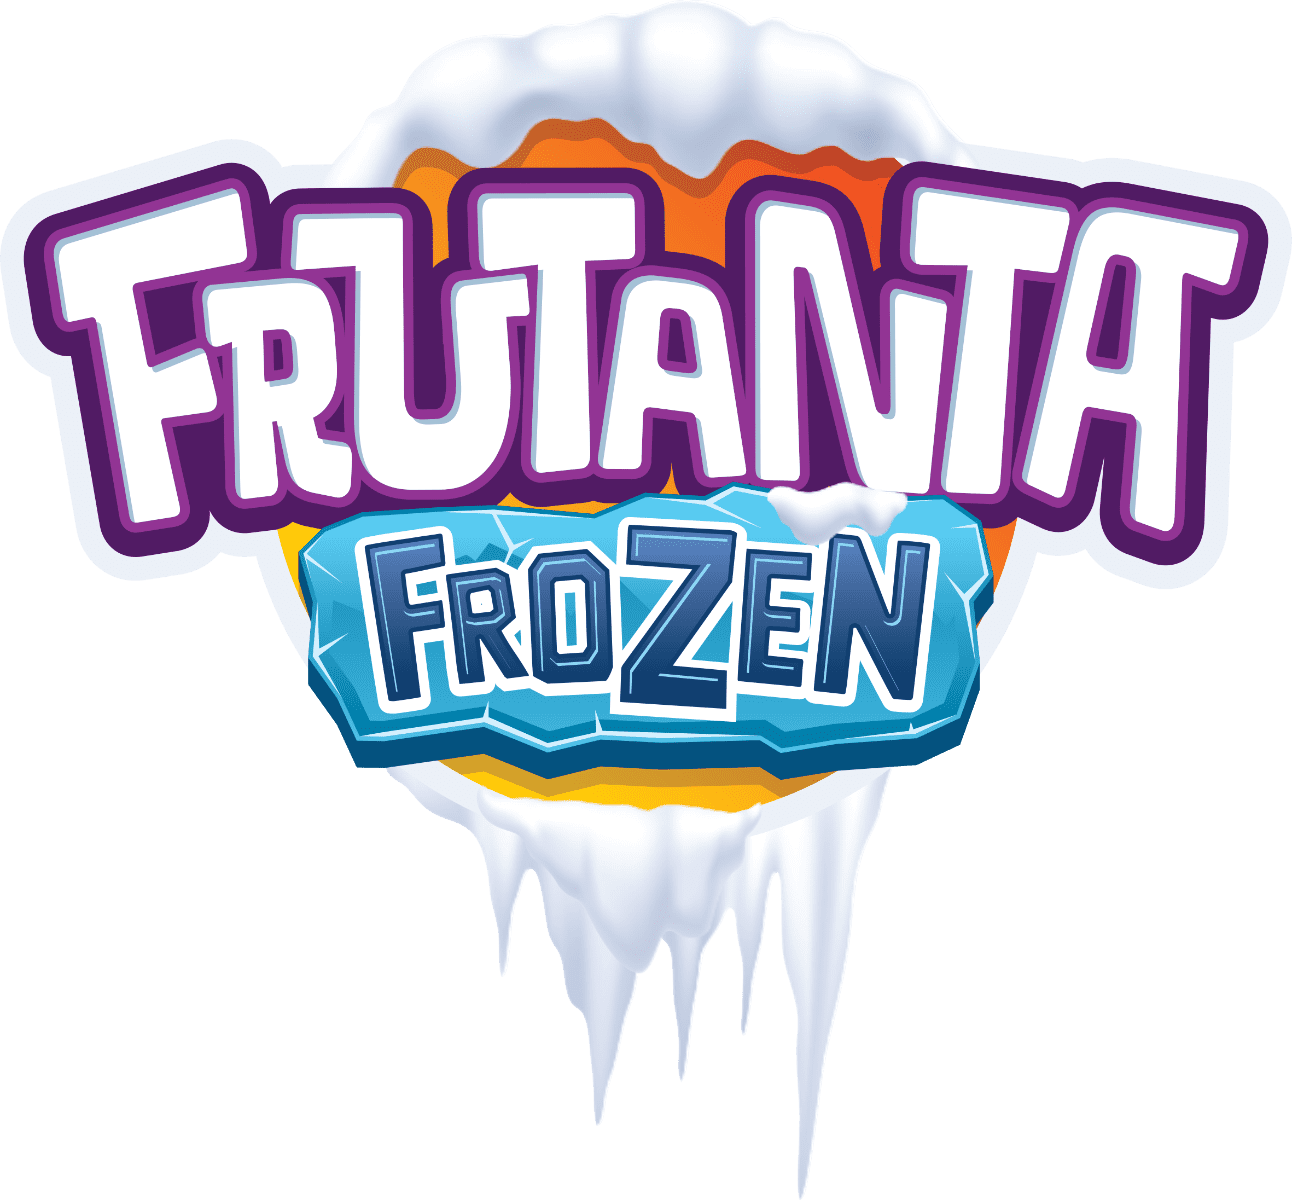 Frutanta Frozen